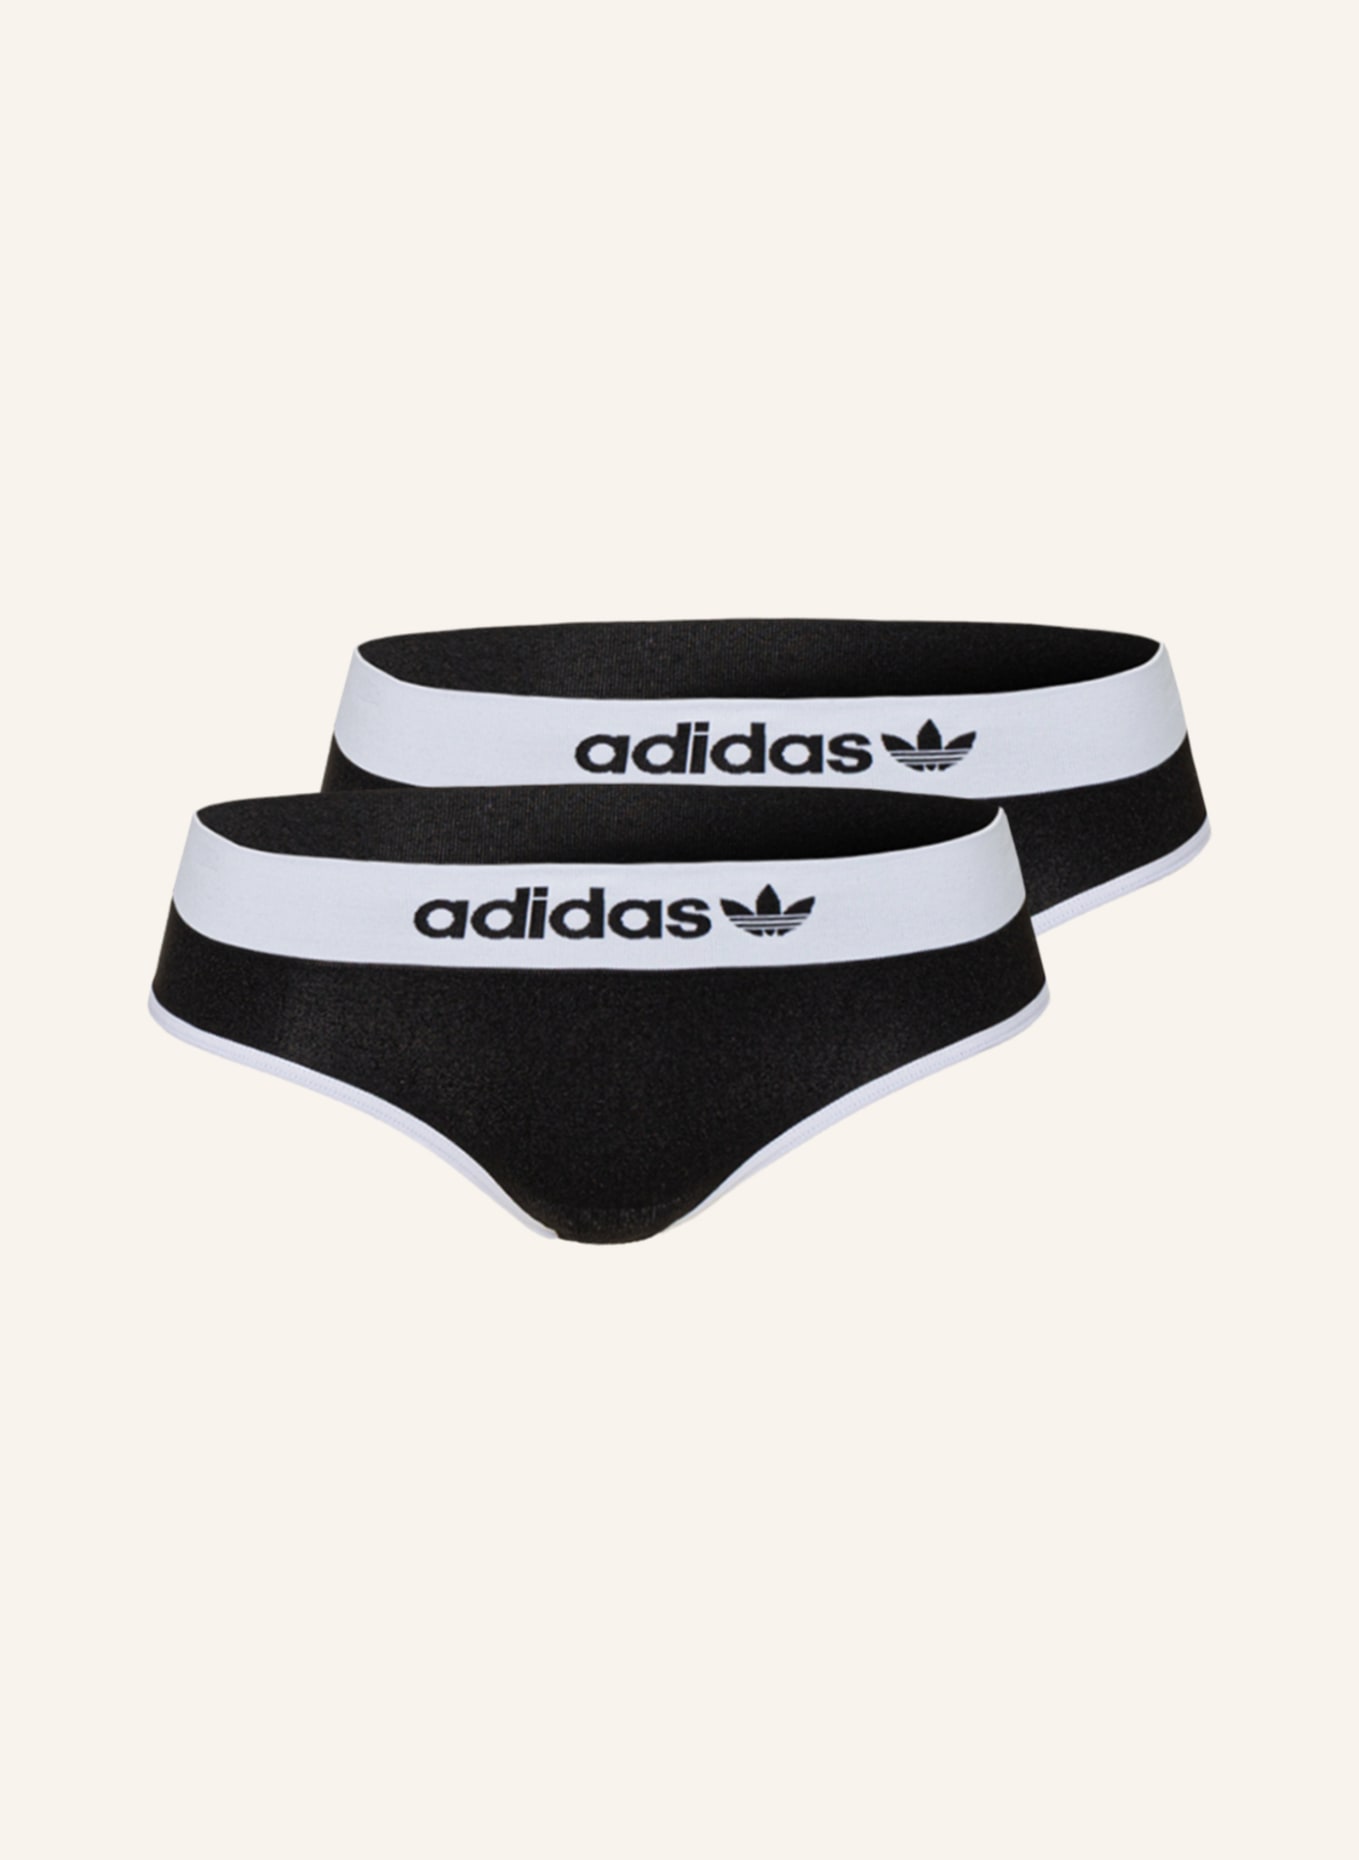 Adidas Originals Underwear for Women